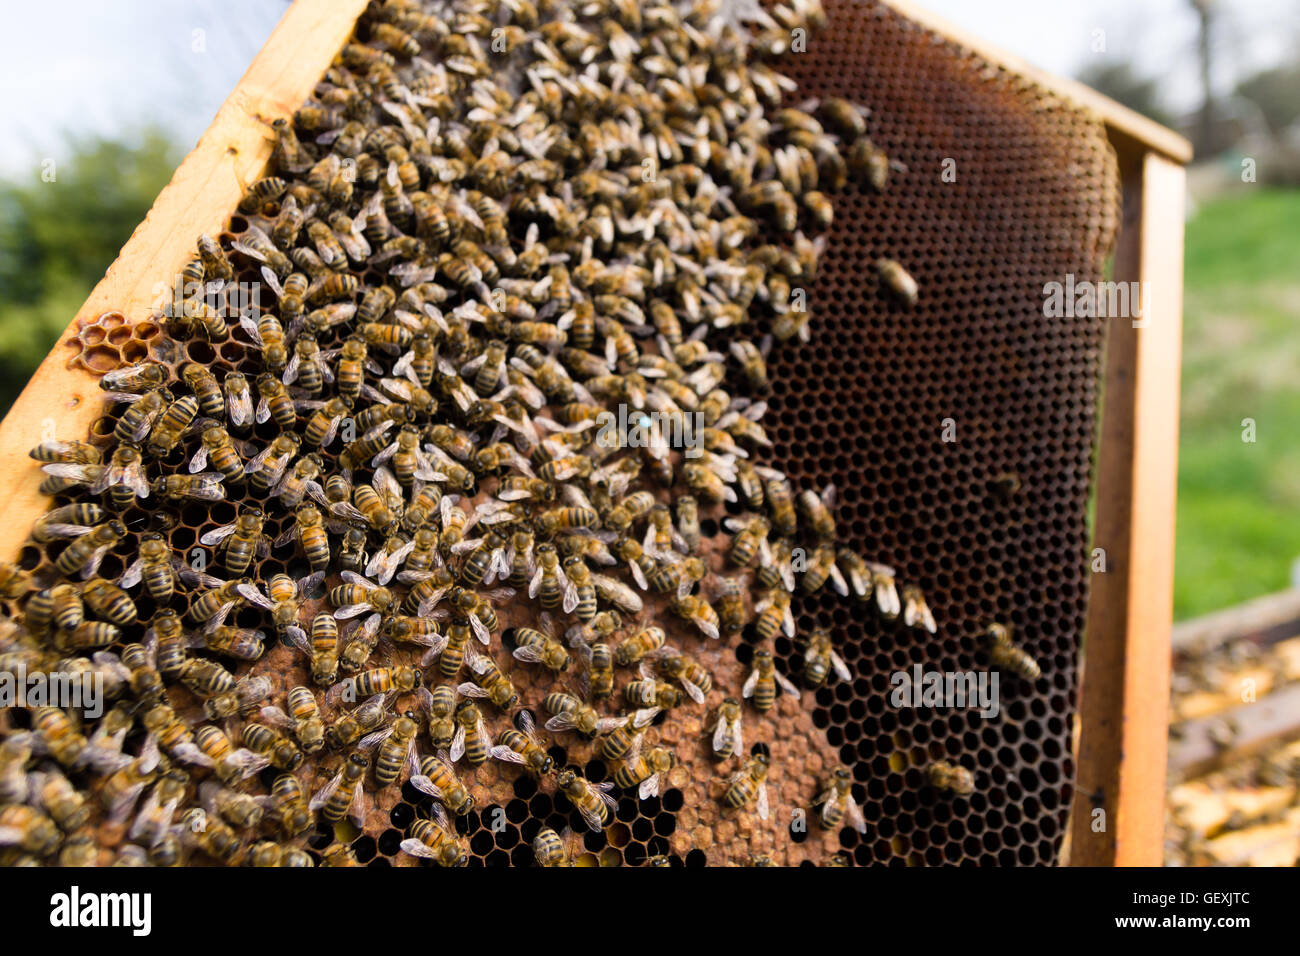 Queen bee detail. Apiculture, rural life.  Beekeeping Stock Photo